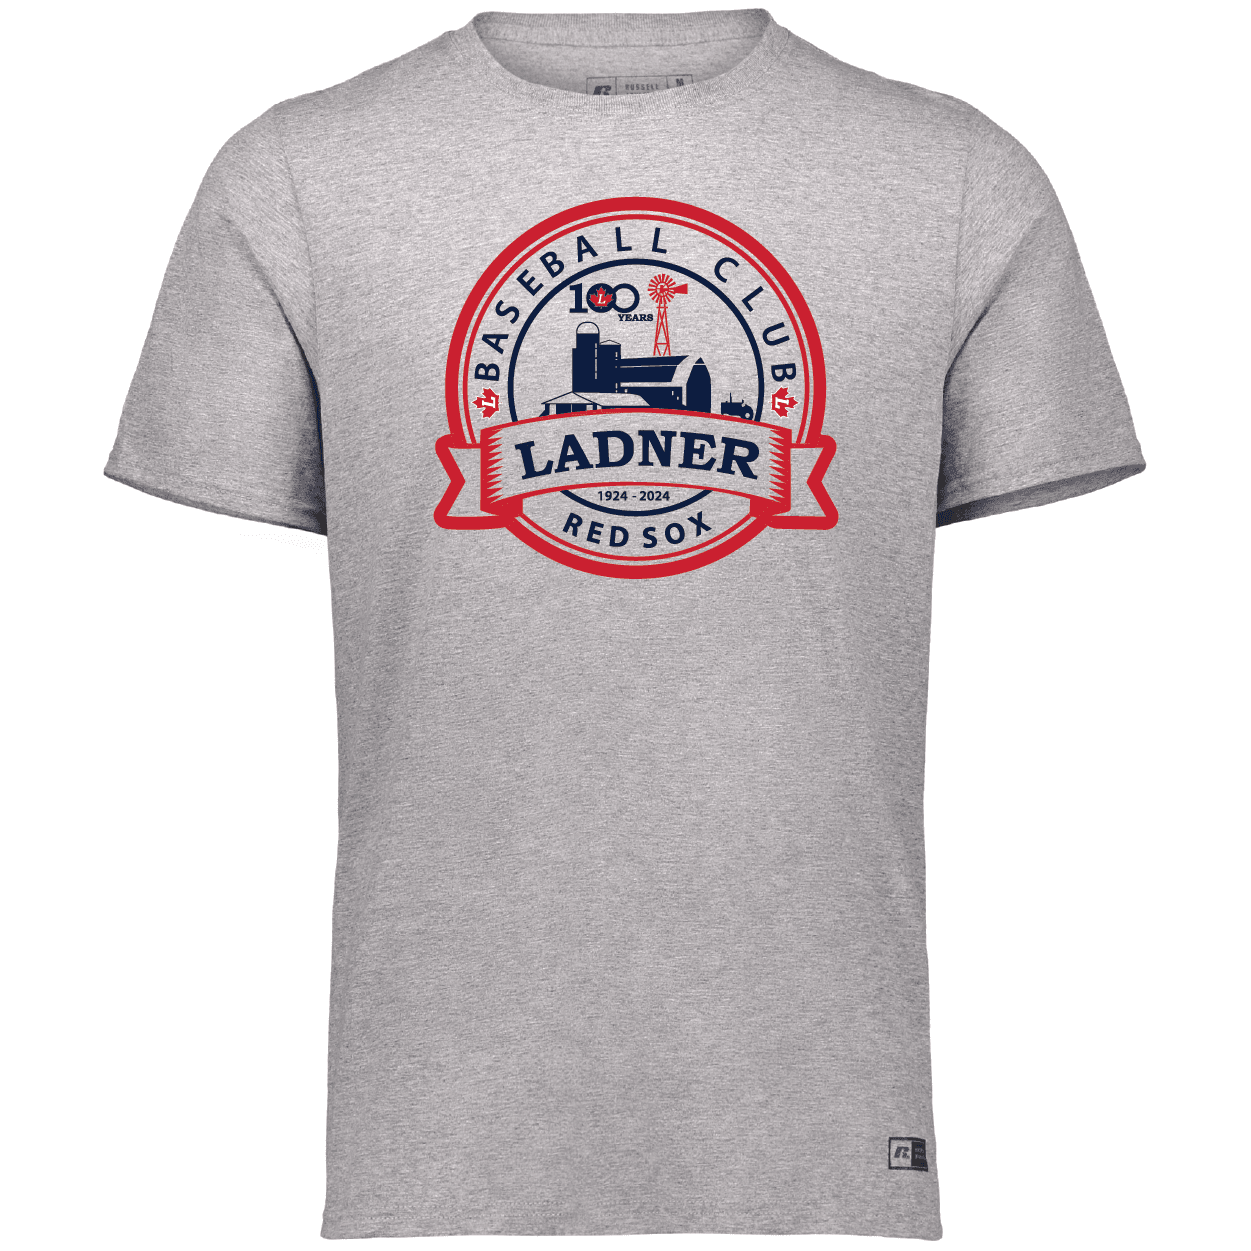 Essential Tee Ladner Minor Baseball Association apparel gear